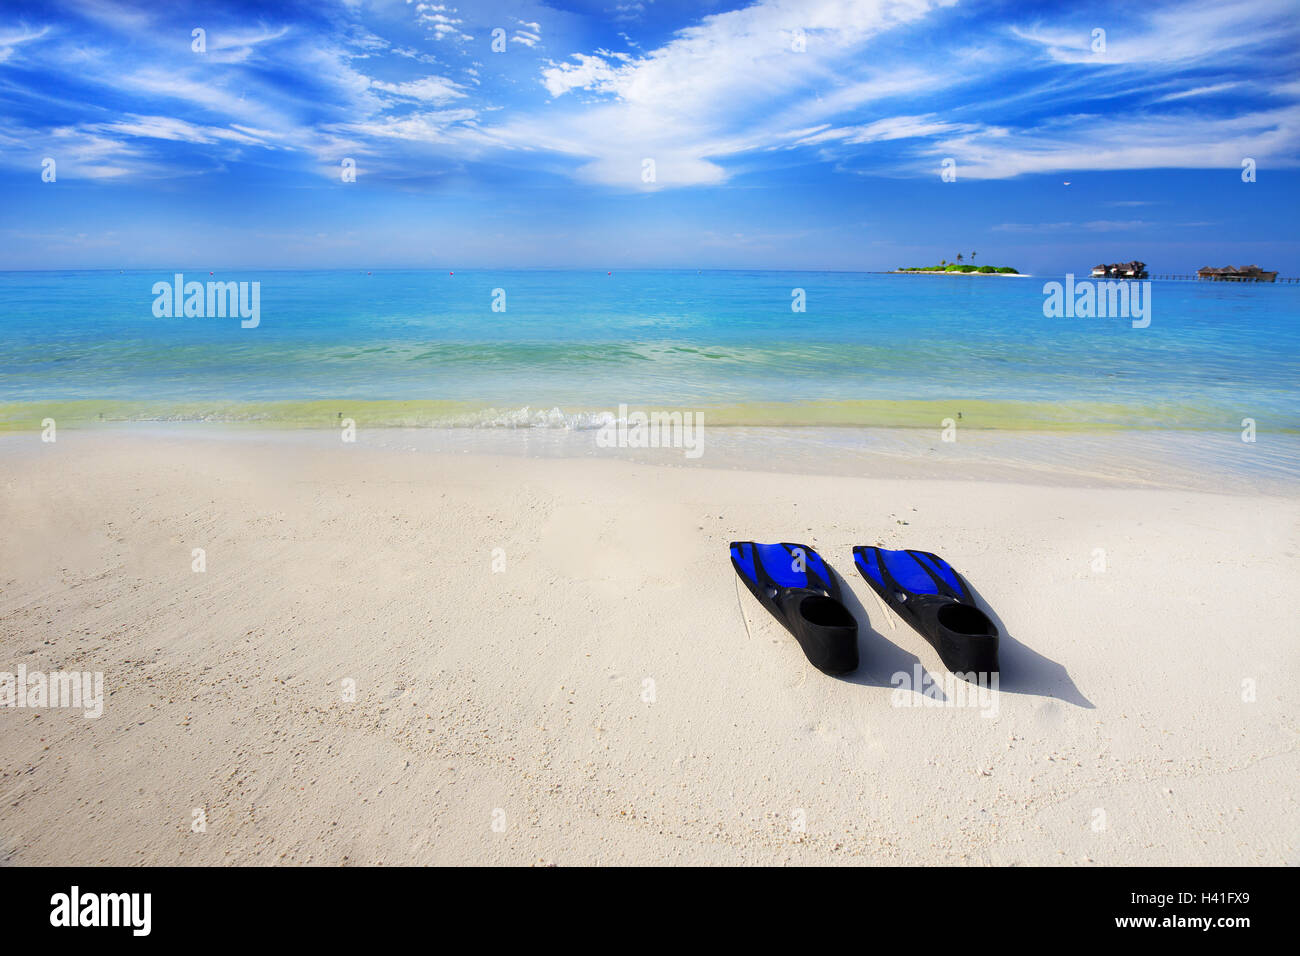 Tropischen Insel mit Sandstrand mit Wasserbungalows, Türkis klarem Wasser und Schnorchelausrüstung Stockfoto